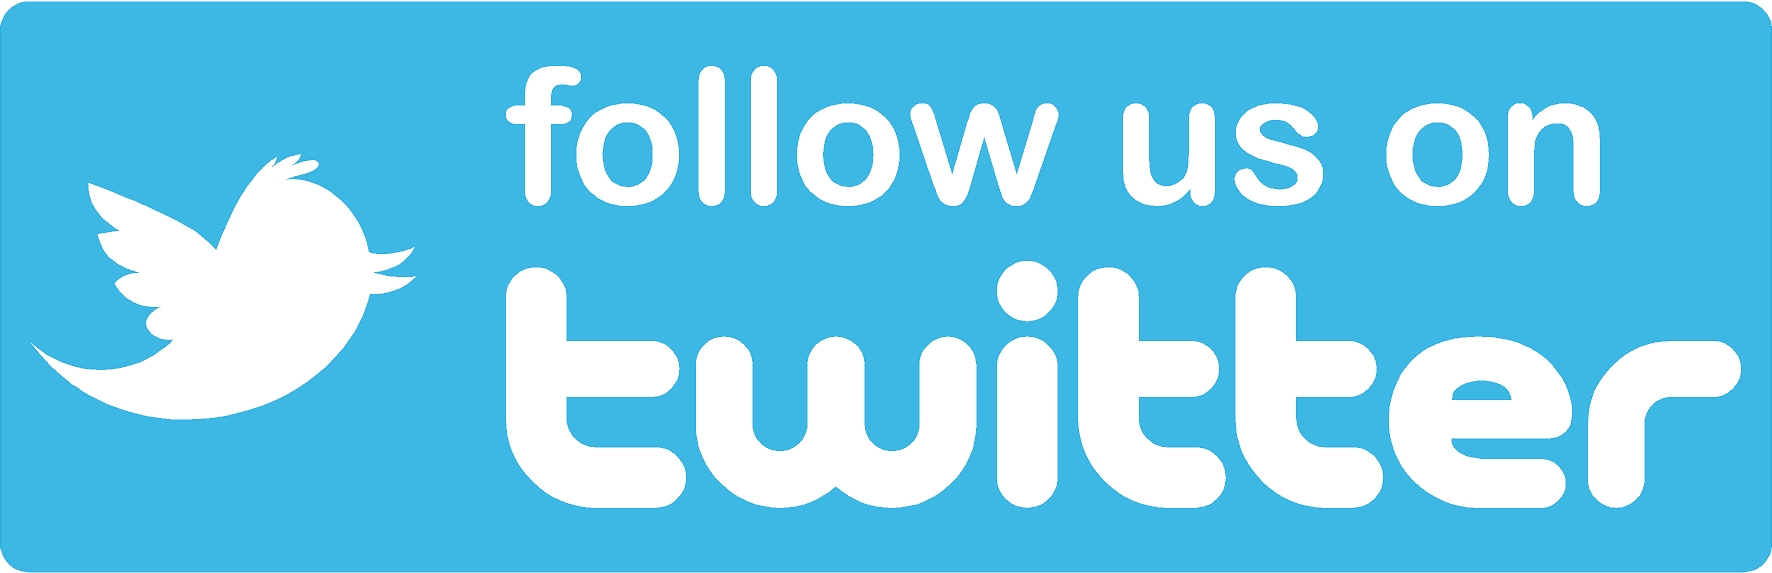 Dhhakezz twitter. Твиттер follow. Follow us on. Follow on twitter. Follow баннеры.